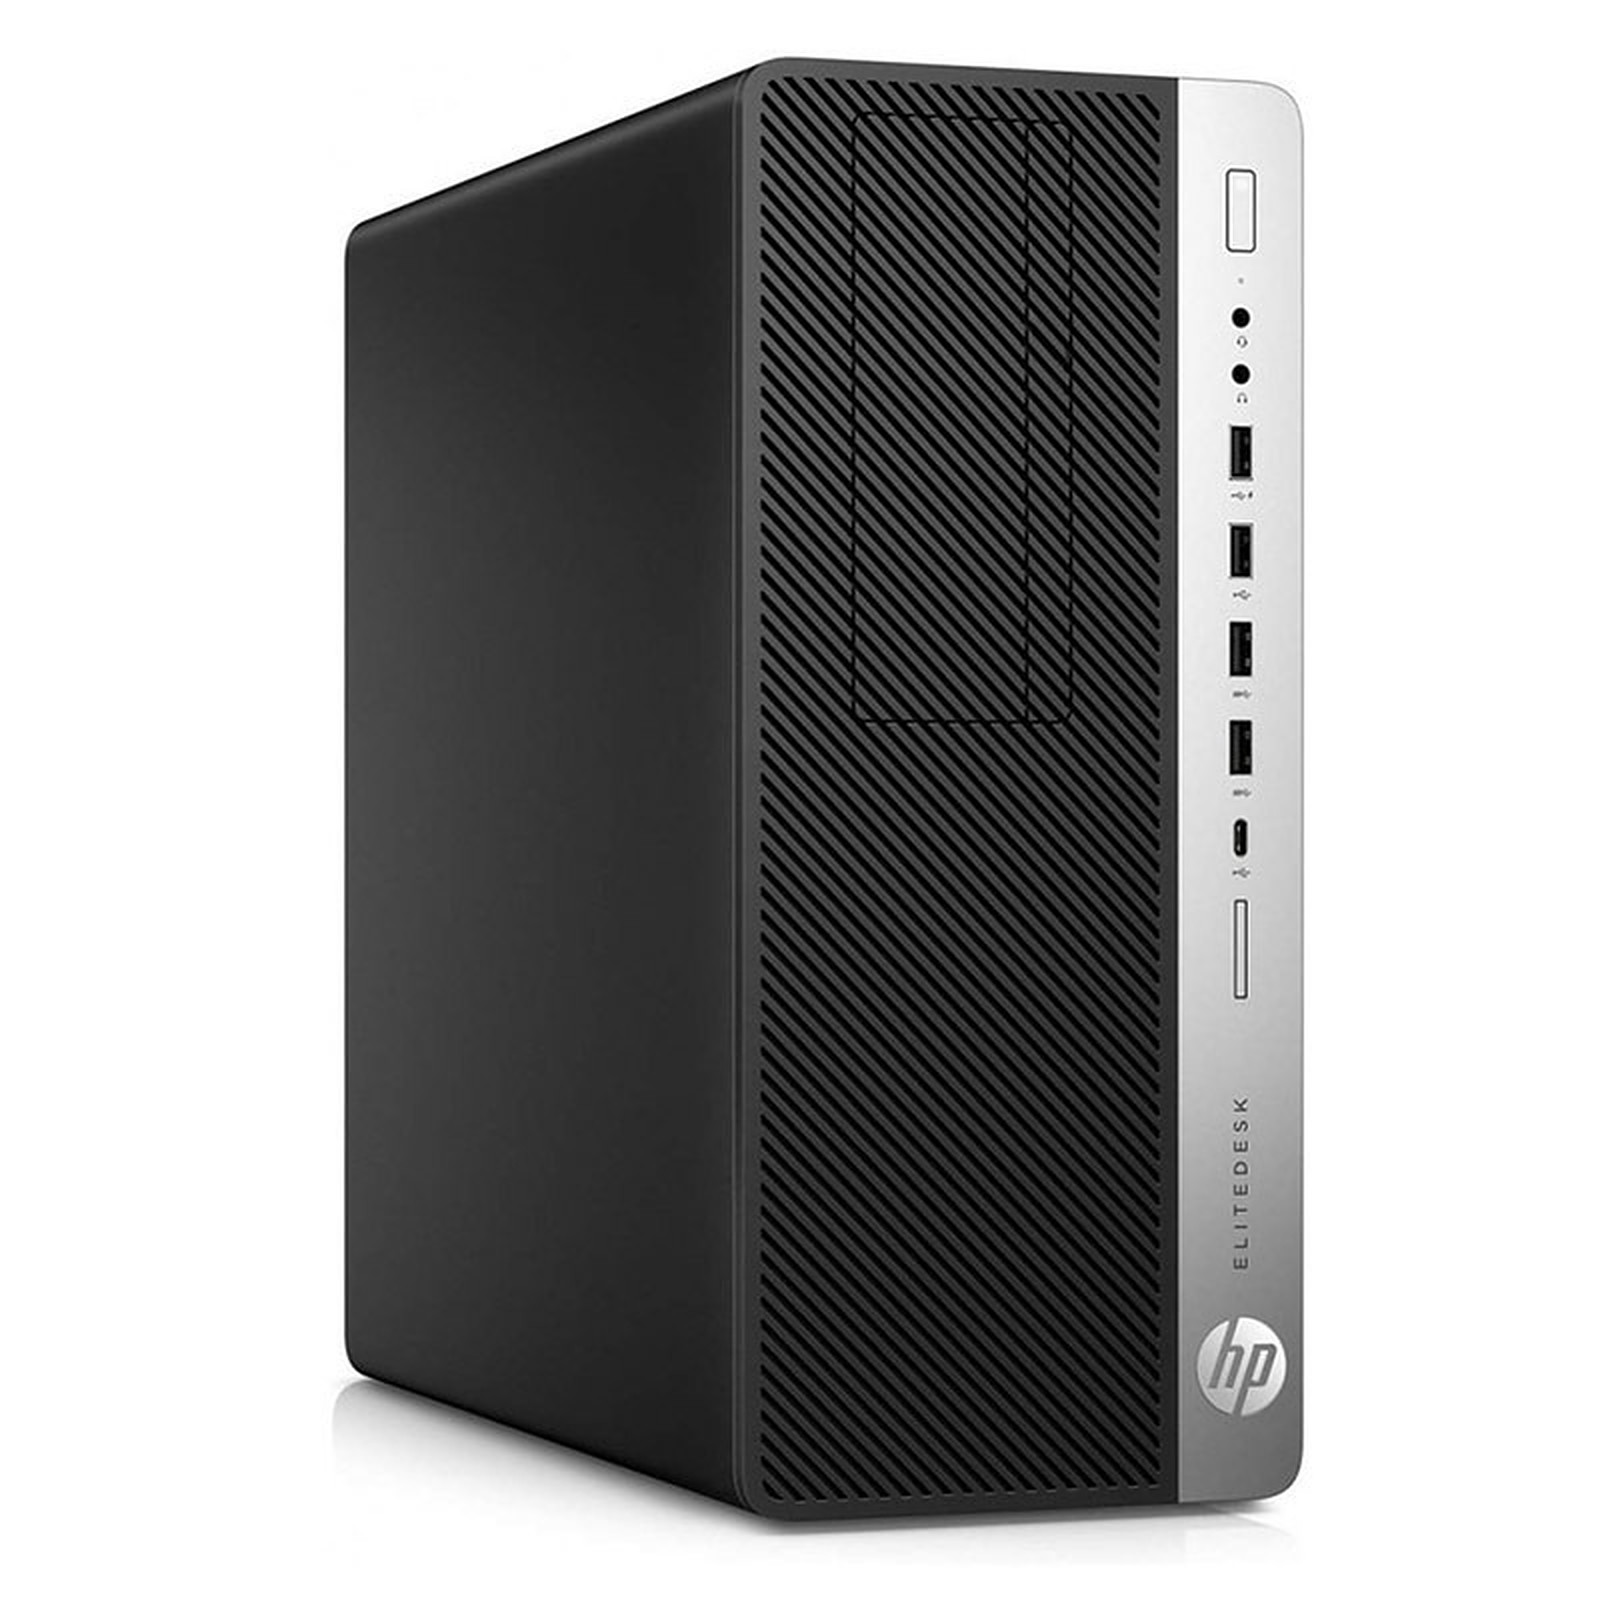 HP LPG-800G3 (I565163S) · Reconditionne - PC de bureau reconditionne HP